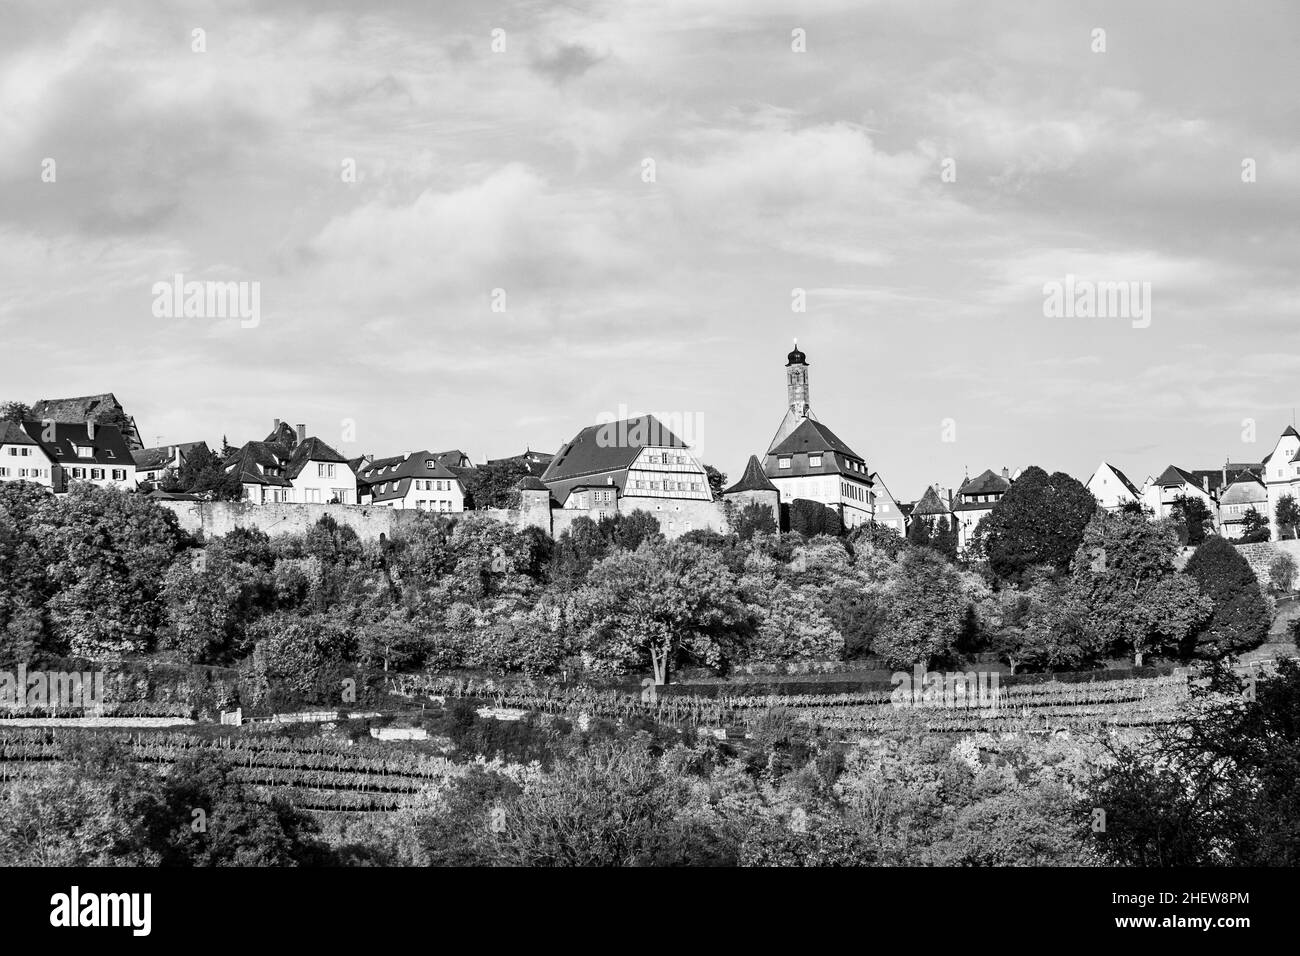 Rothenburg ob der Tauber, alte berühmte Stadt aus dem Mittelalter, vom romantischen Tal der Tauber aus gesehen Stockfoto